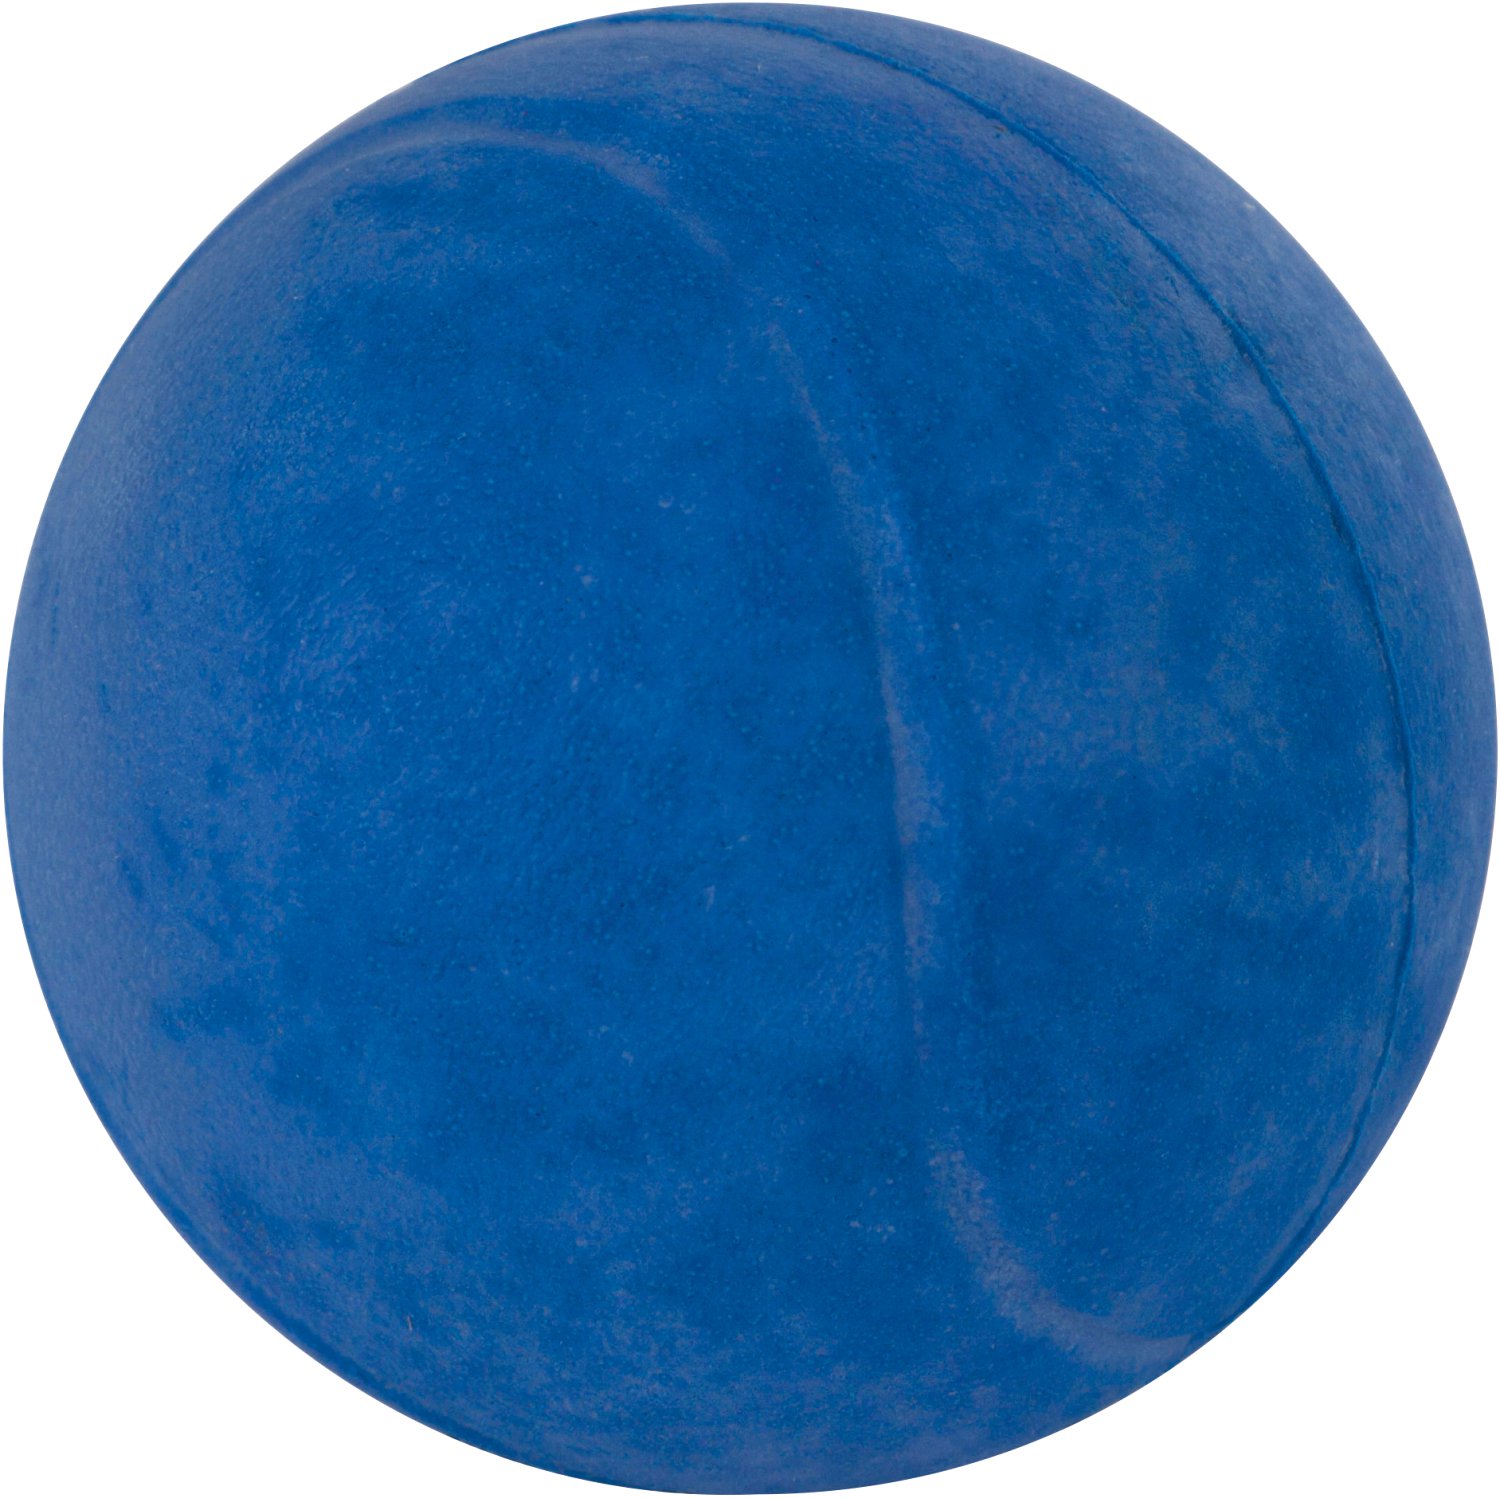 Ball Moosgummi 7,5 cm